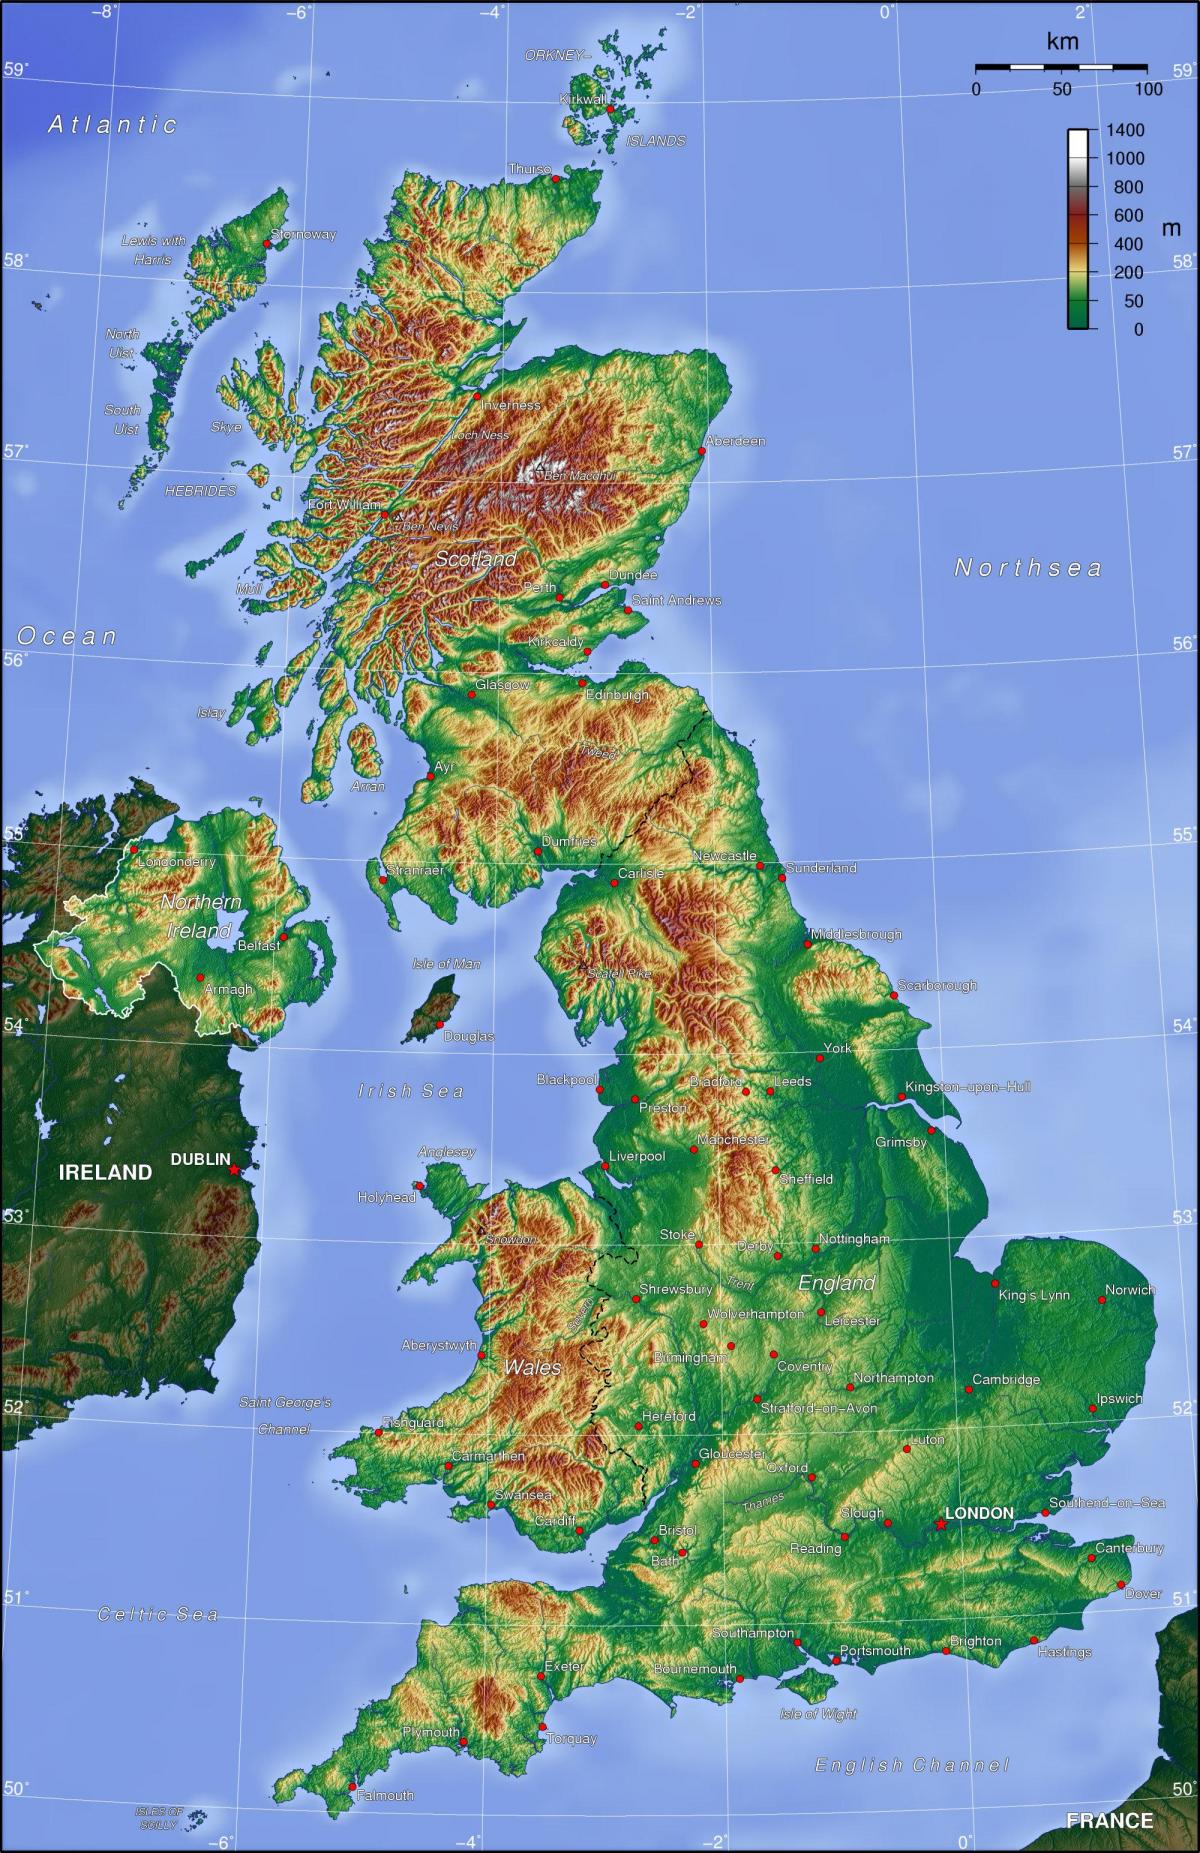 Mapa topográfico del Reino Unido (UK)